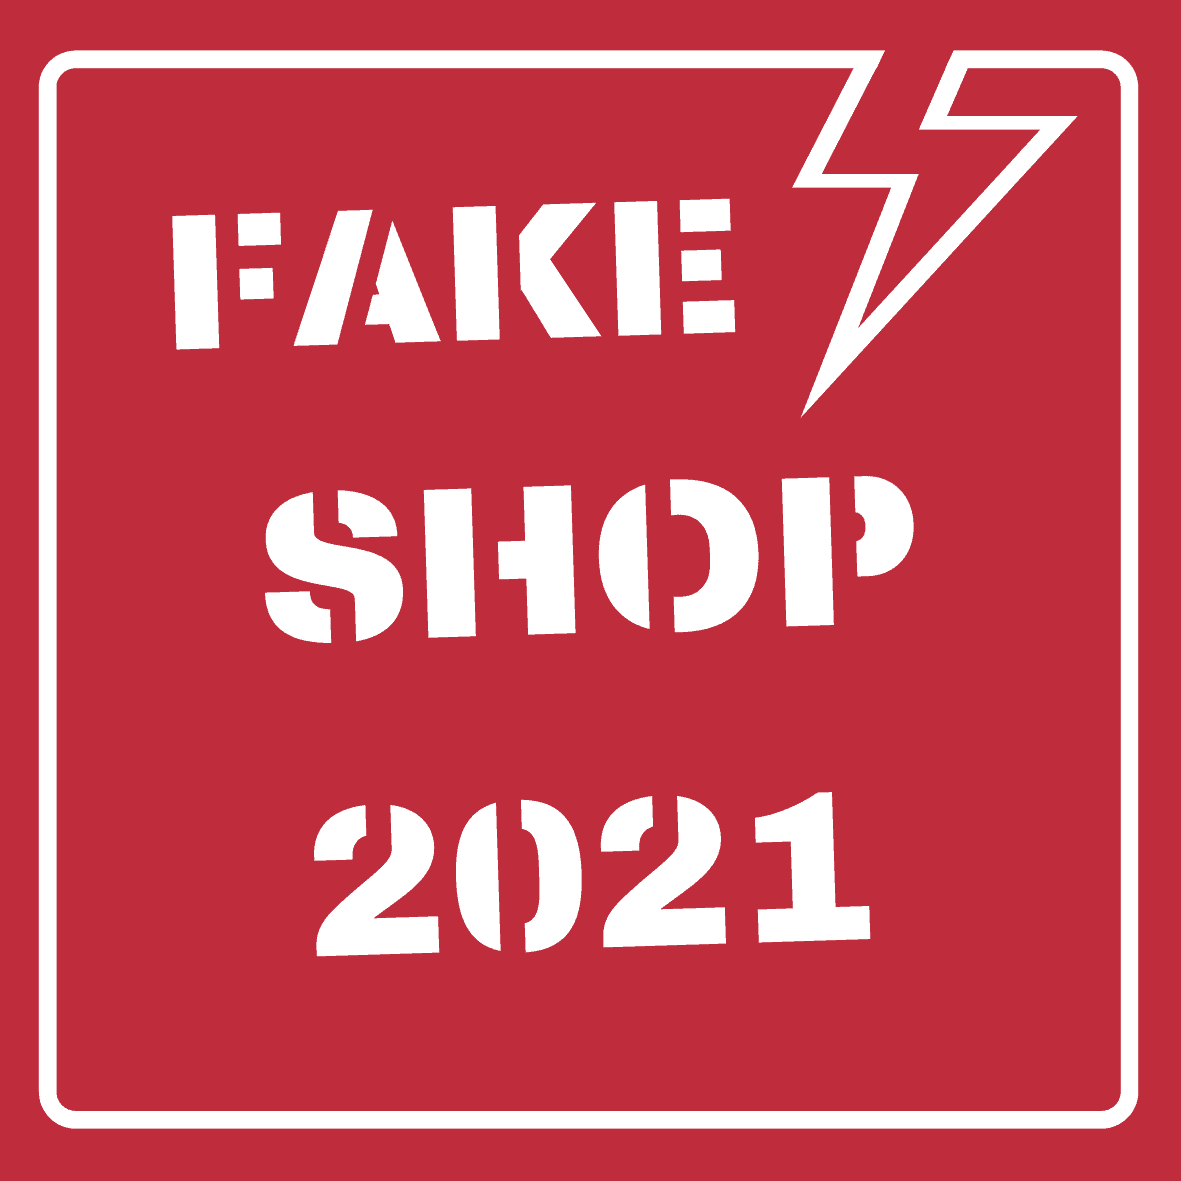 Fake Shops September 2020 2